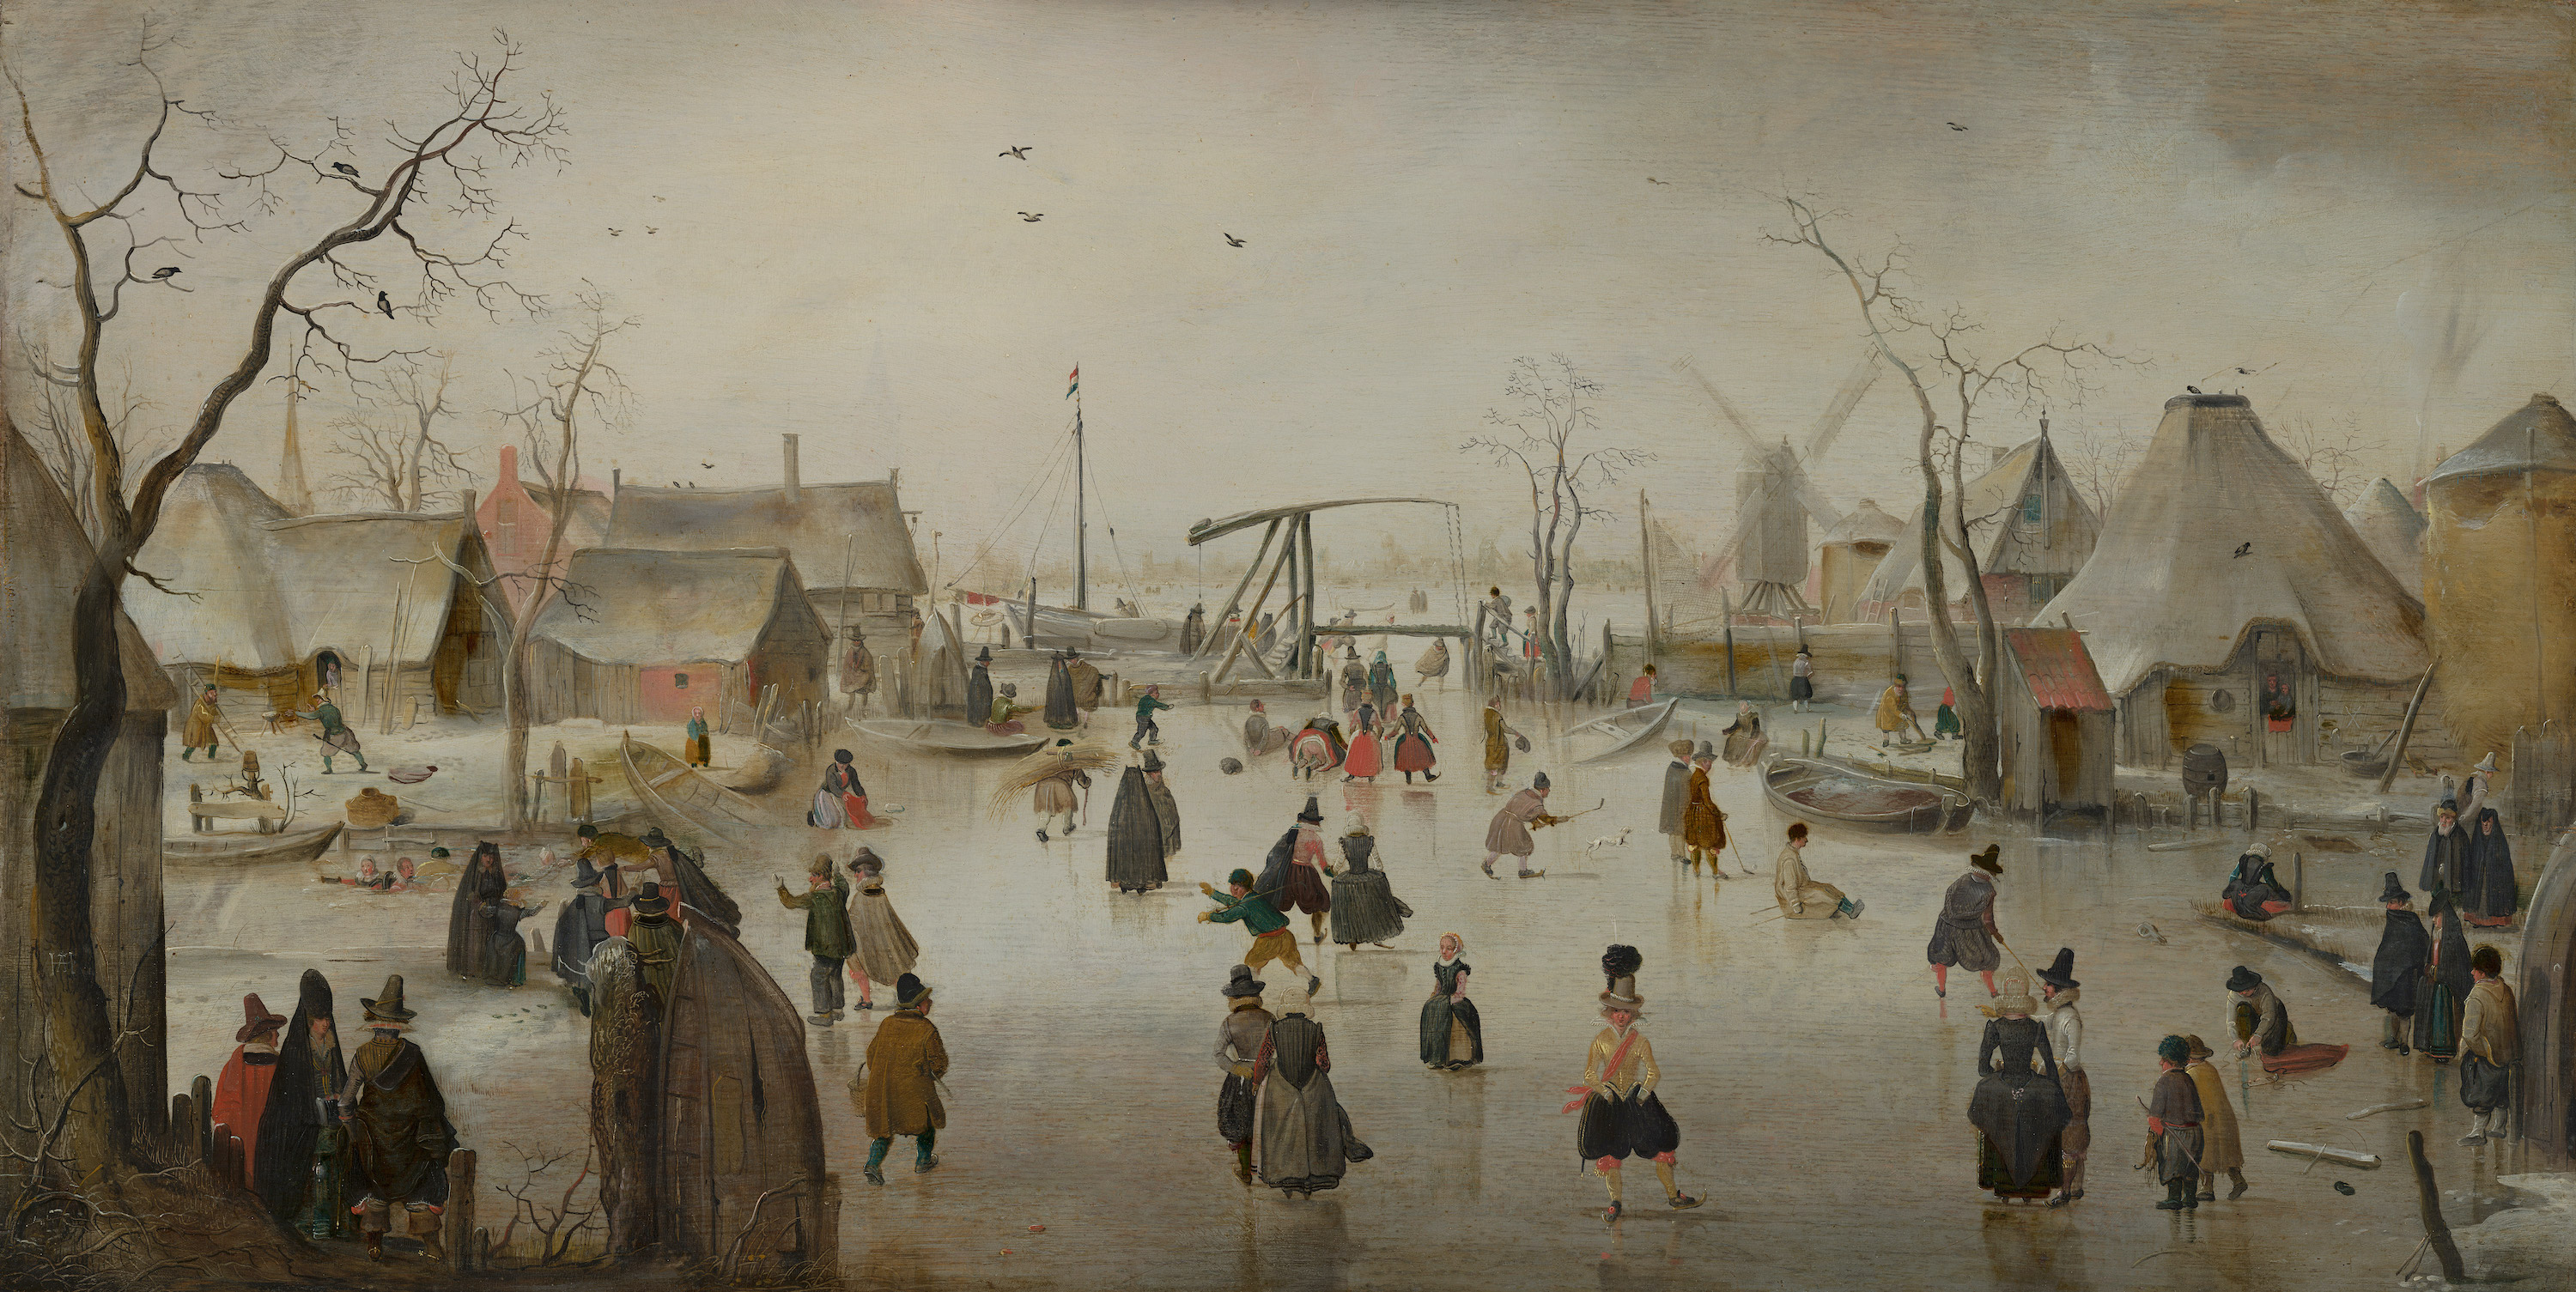 겨울 풍경(Ice Scene) by Hendrick Avercamp - 1610 - 71 cm x 36 cm 